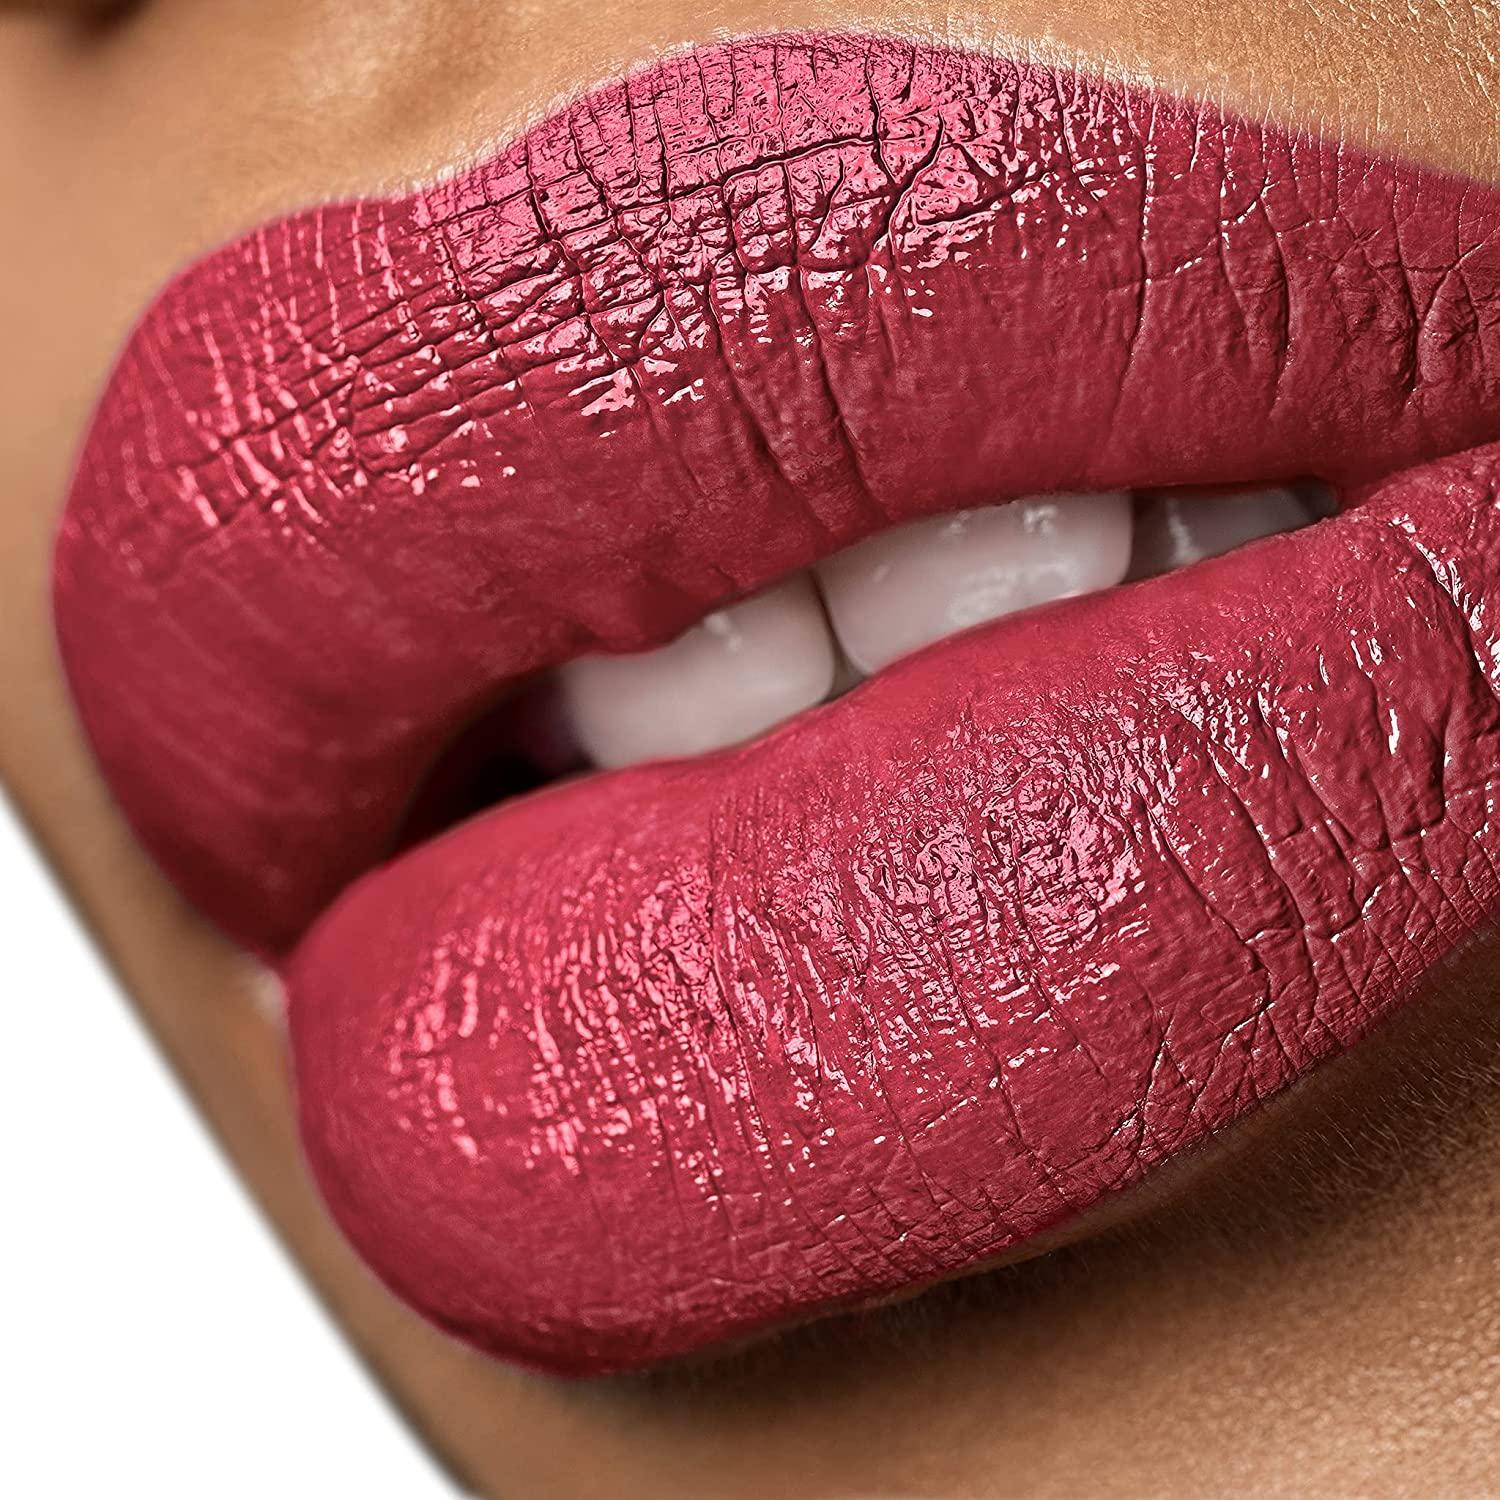 TKB Lip Gloss Base & Lip Color Set- Mix Your Own Colors and Lip Gloss, DIY  Clear Lip Gloss and Pigmented Lip Liquid Colors